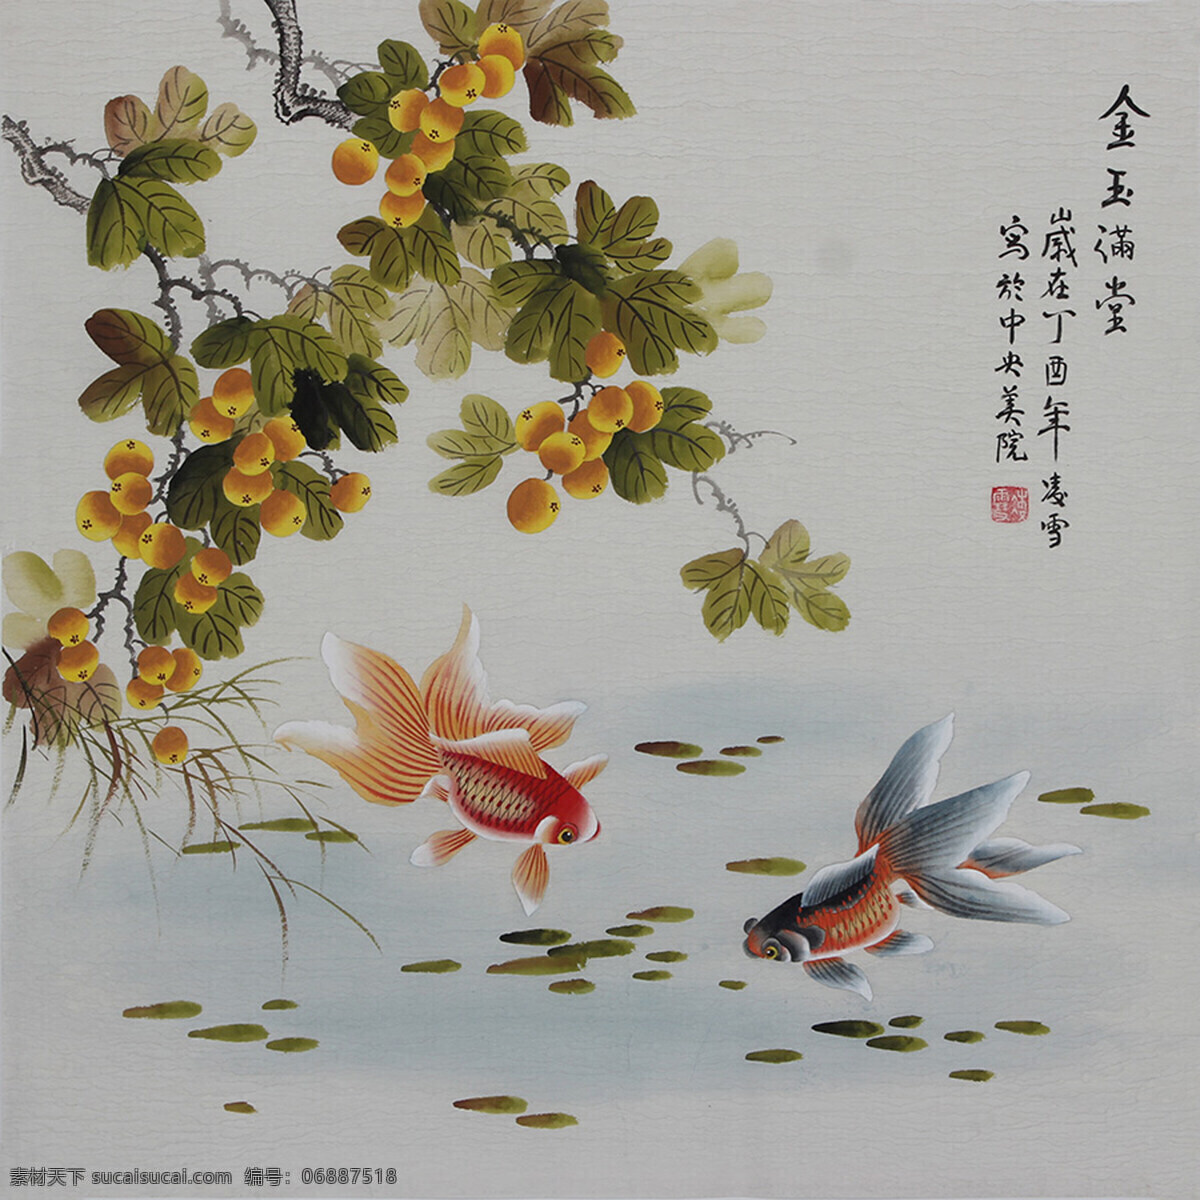 水墨鱼 工笔 国画 花卉 水彩 鱼 文化艺术 绘画书法